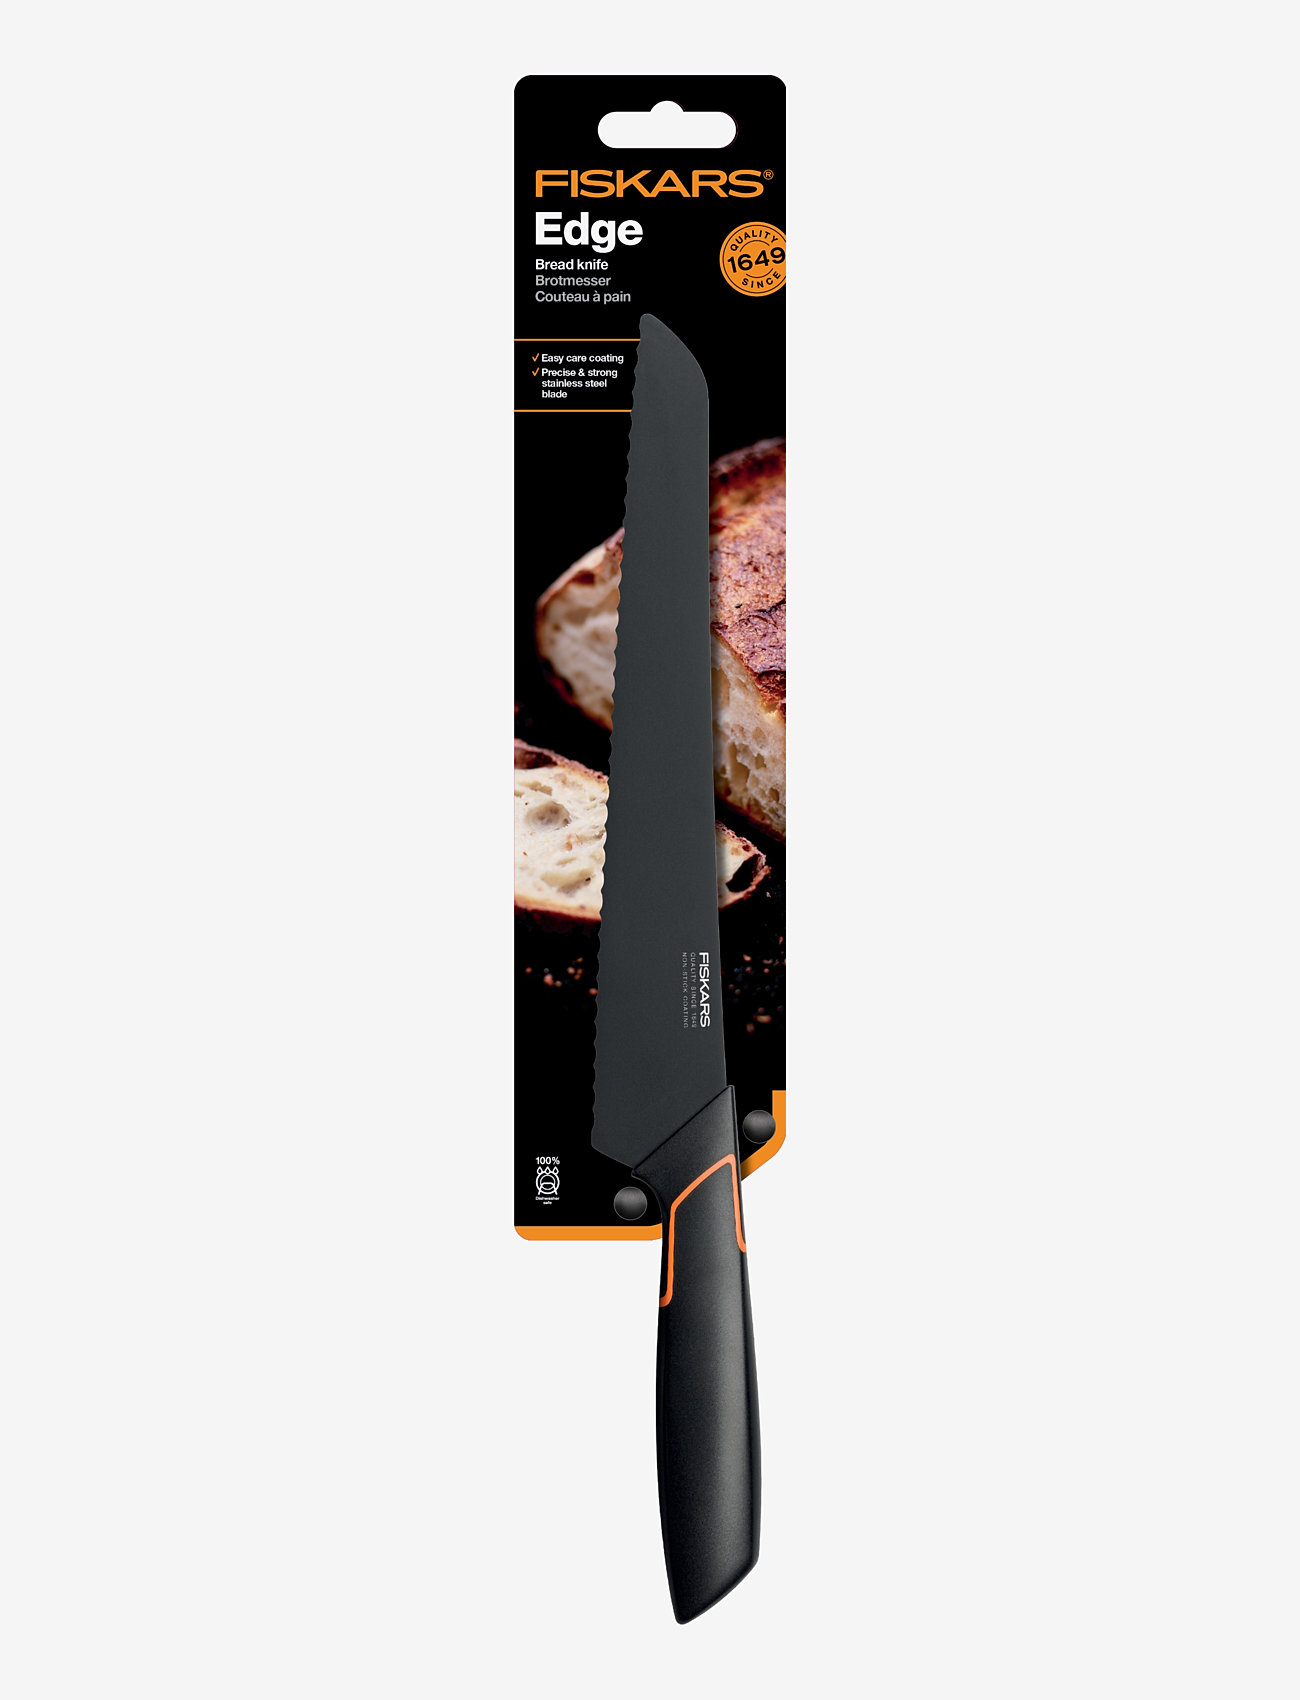 Fiskars - Edge Bread Knife 23 cm - die niedrigsten preise - black - 1